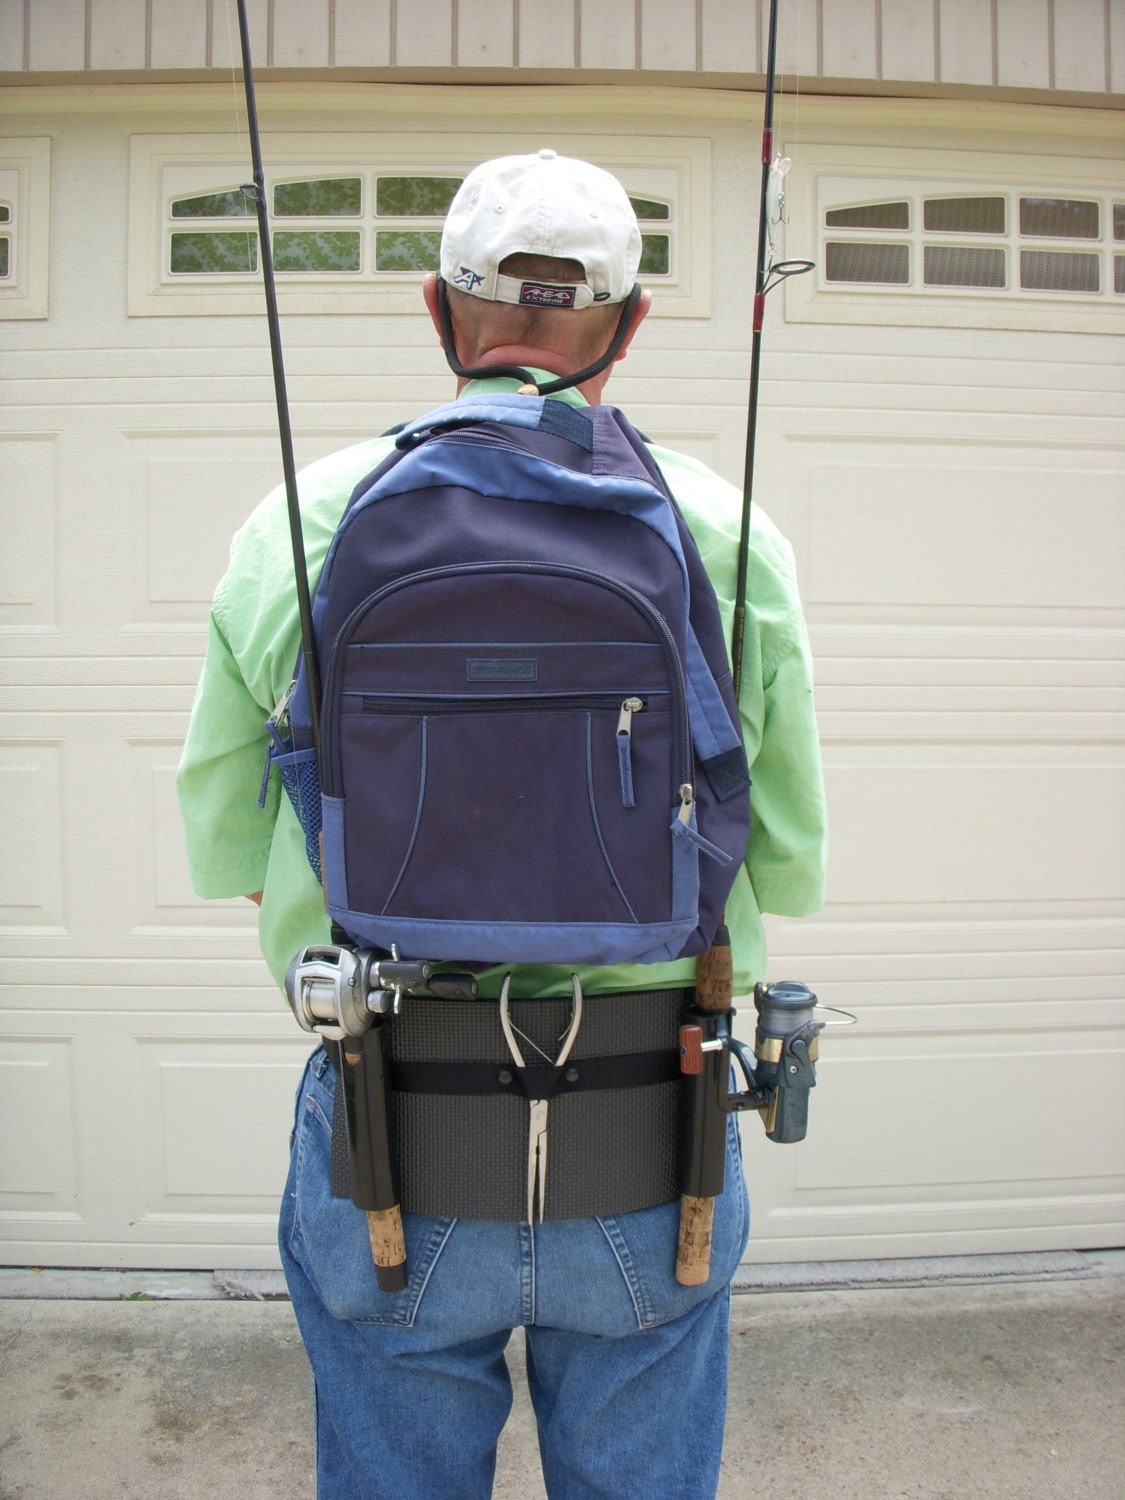 Backpack fishing rod holster / holder